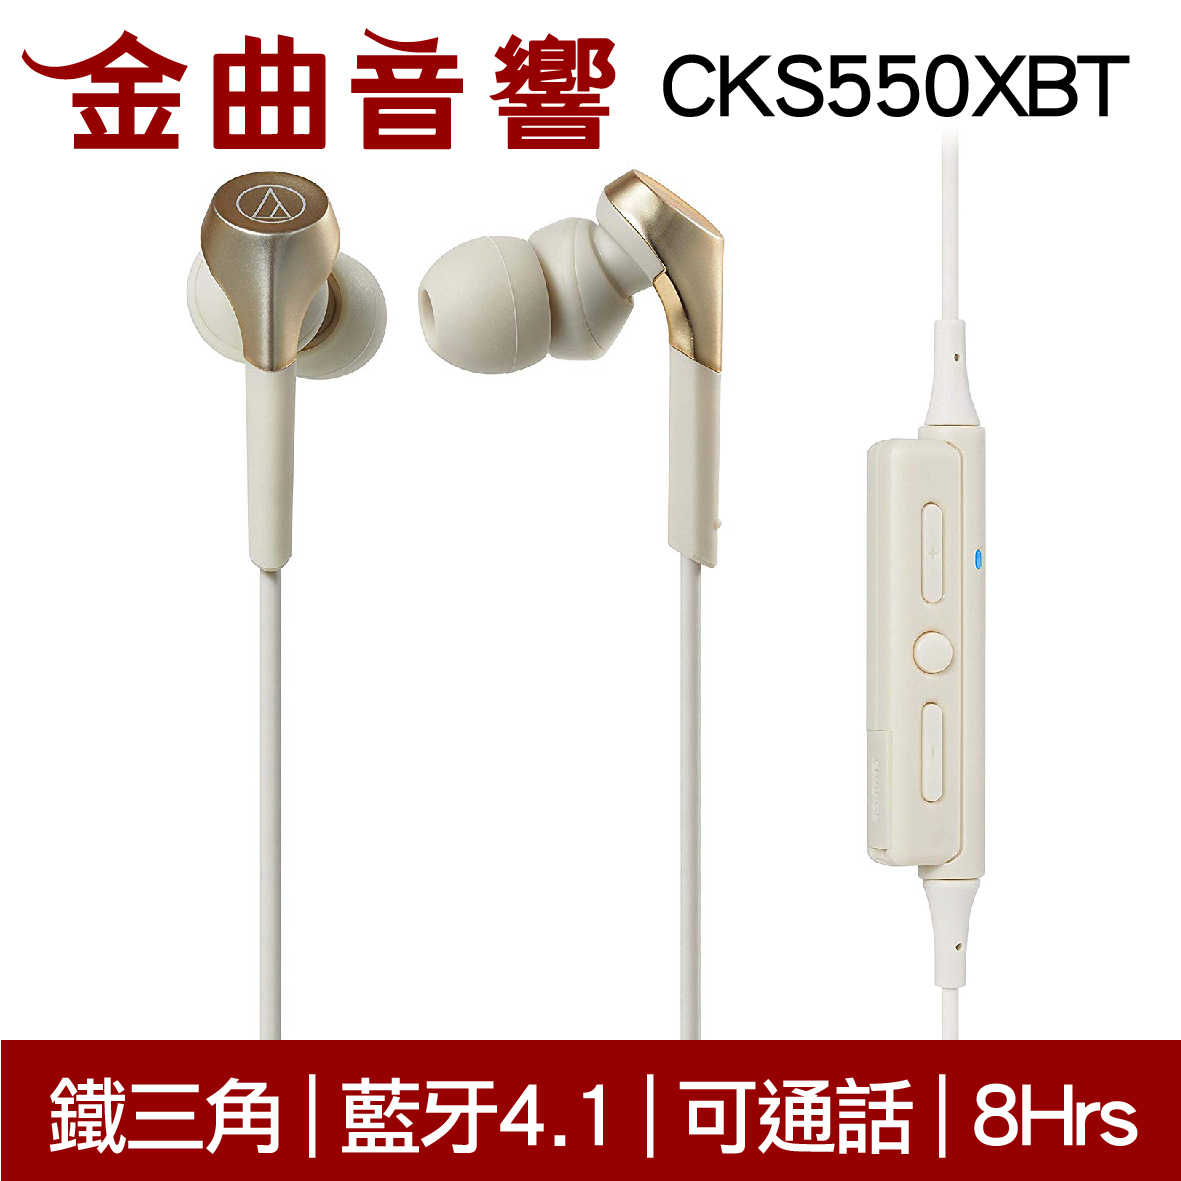 鐵三角 ATH-CKS550XBT 紅色 藍牙 耳道式 耳機 可通話 | 金曲音響